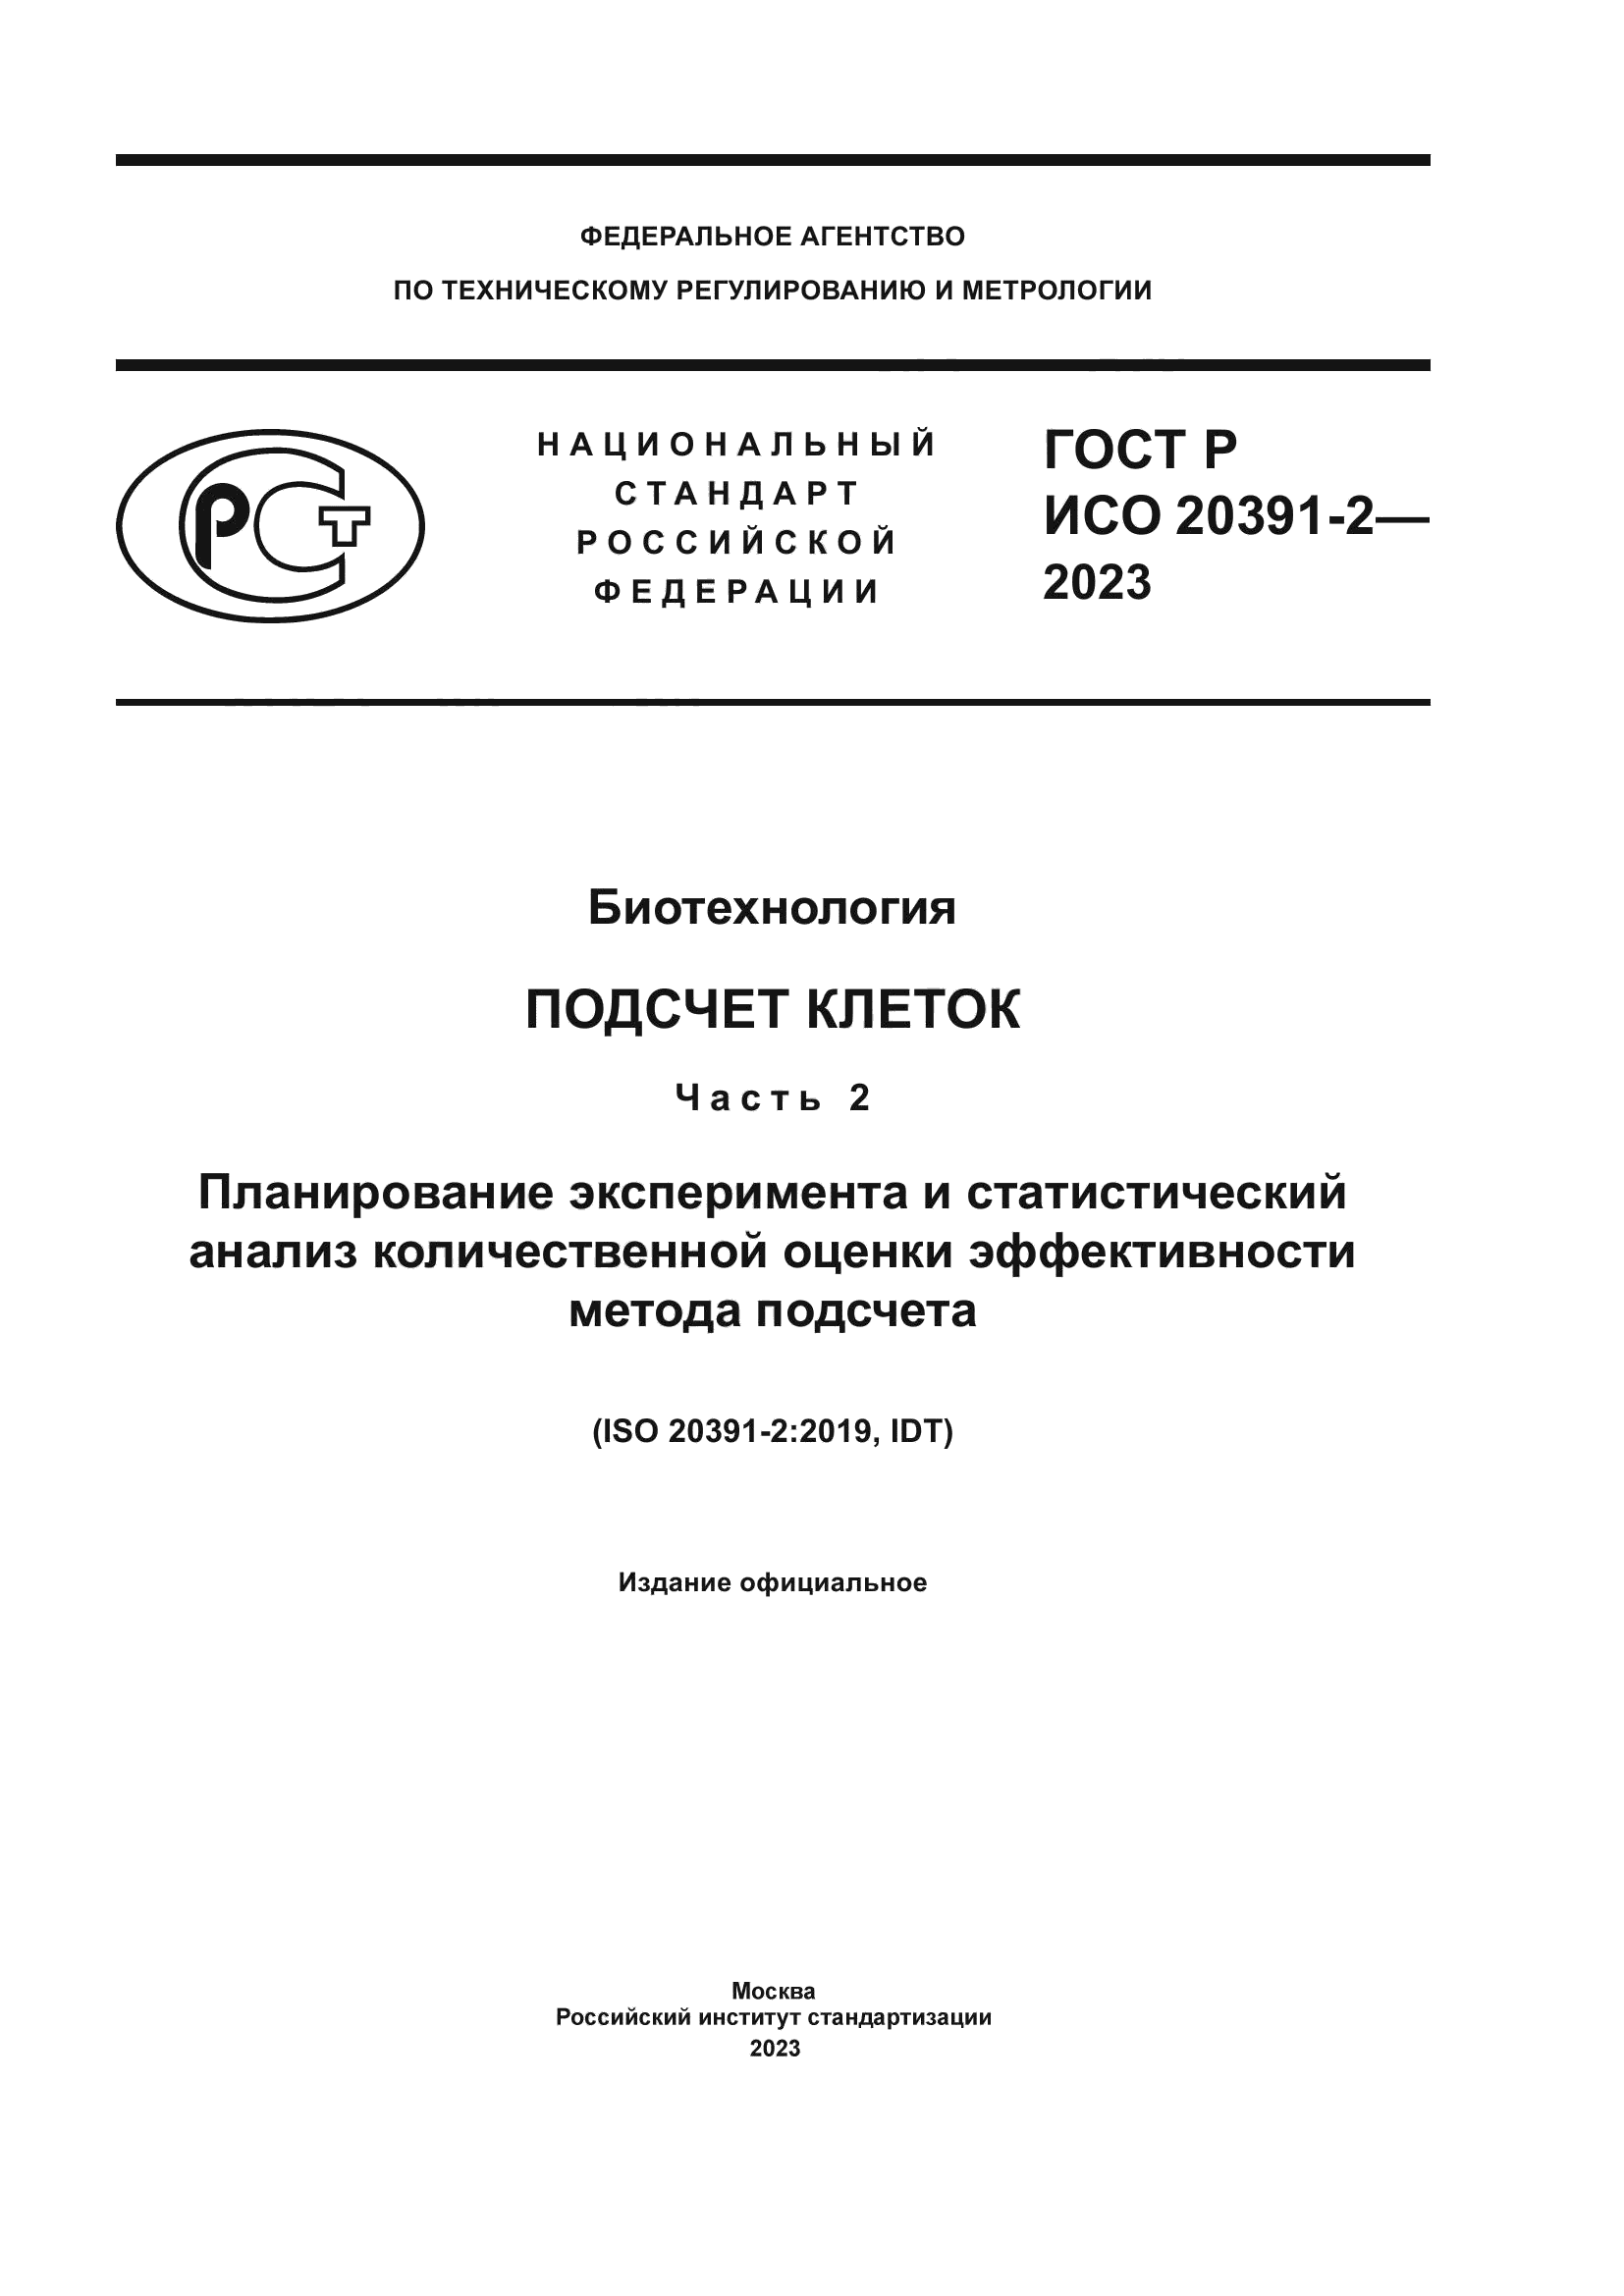 ГОСТ Р ИСО 20391-2-2023